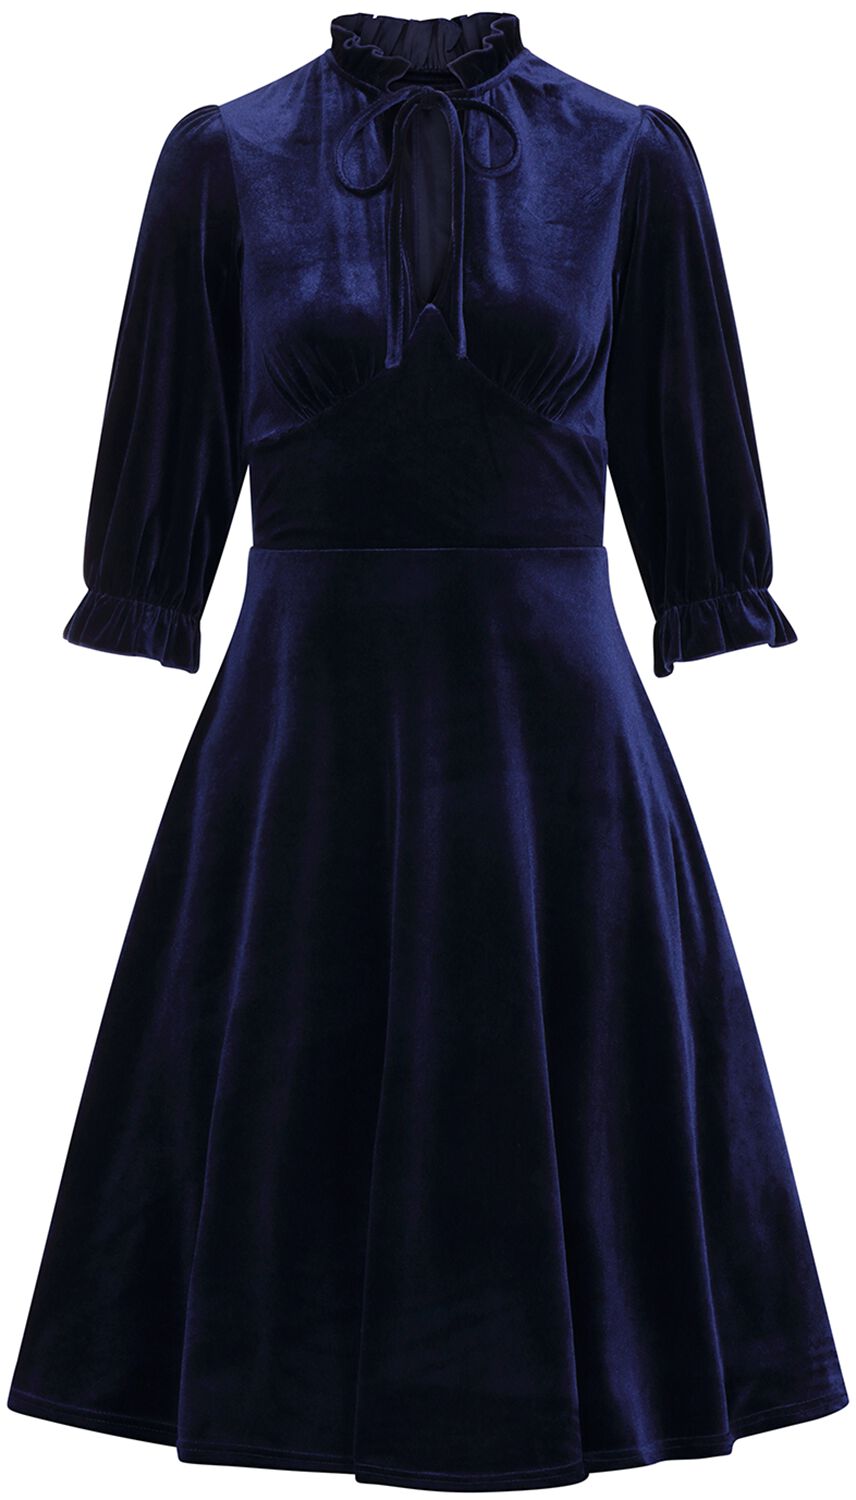 Hell Bunny - Rockabilly Kleid knielang - Orion Dress - XS bis 4XL - für Damen - Größe M - blau